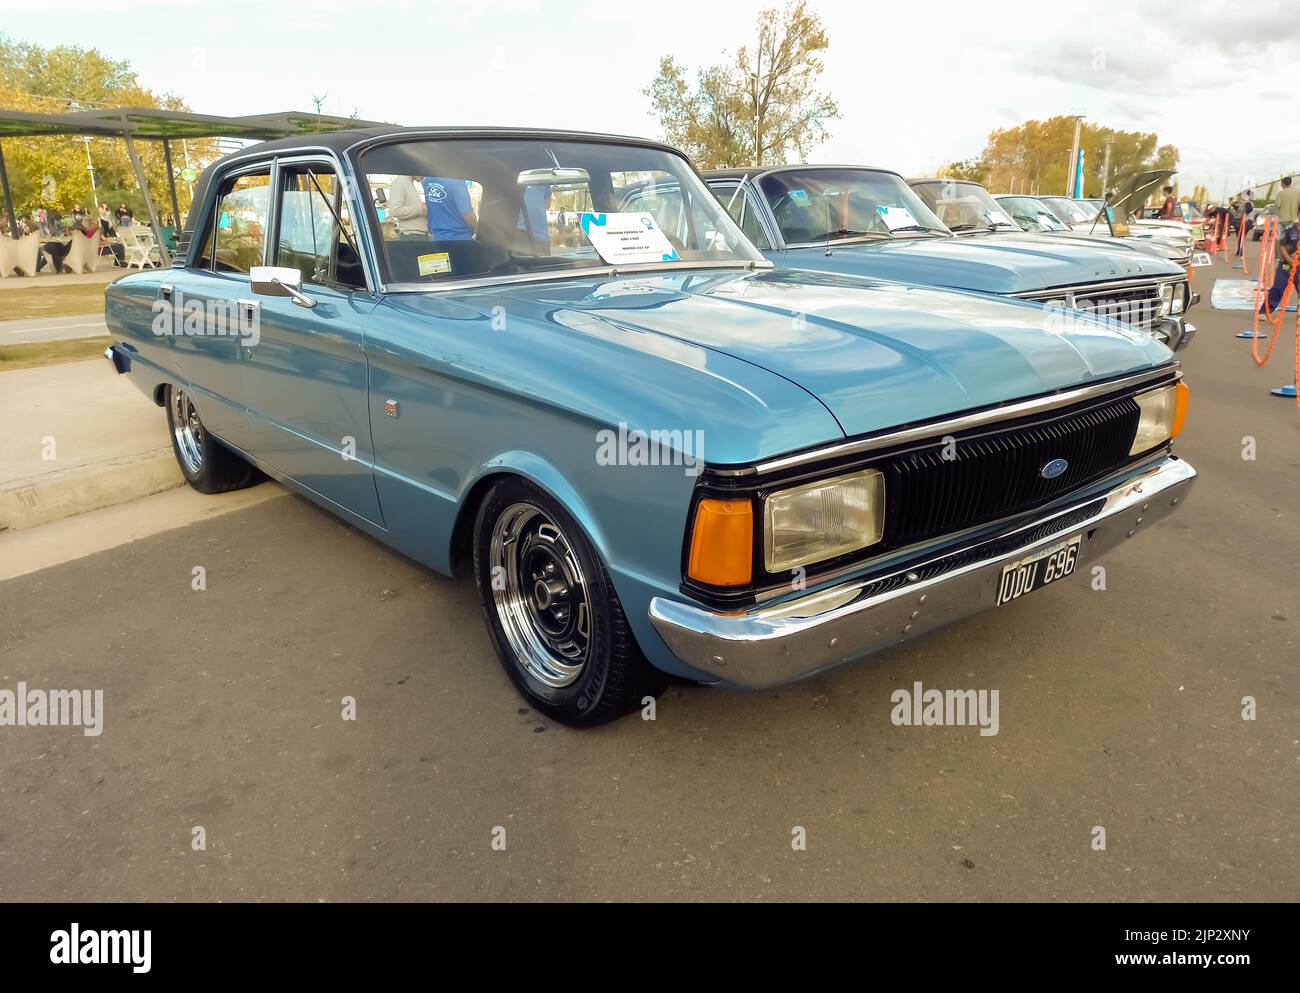 Aufnahme eines alten blauen 1980 Ford Falcon Futura SP Limousine Familienwagens in einem Park. Expo Fierro 2022 Oldtimer-Show. Stockfoto